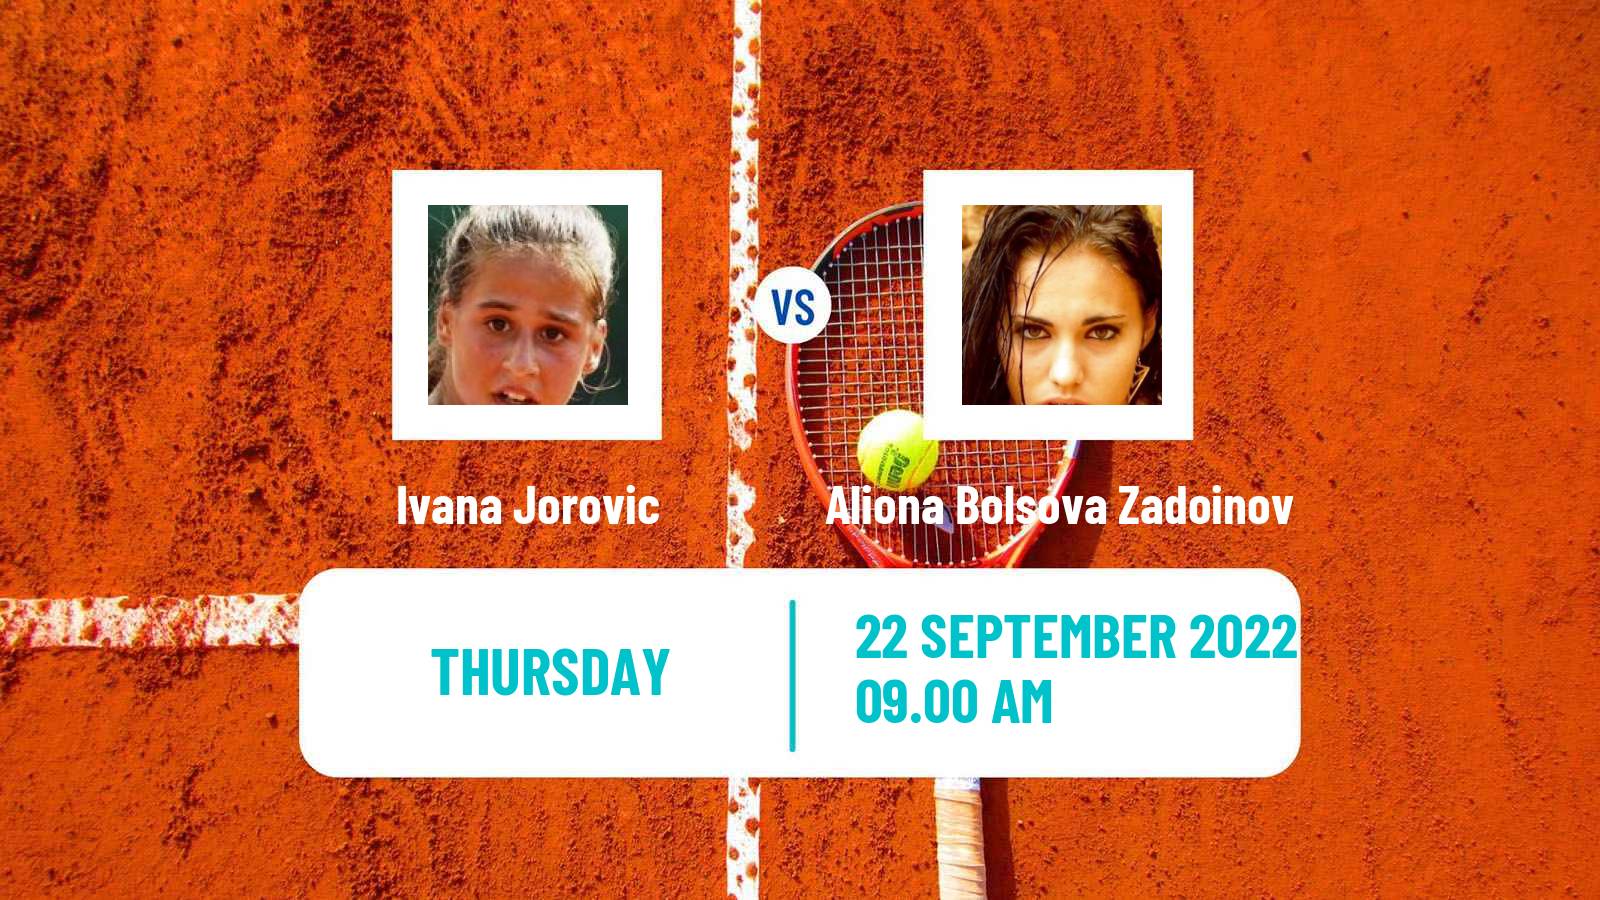 Tennis ITF Tournaments Ivana Jorovic - Aliona Bolsova Zadoinov